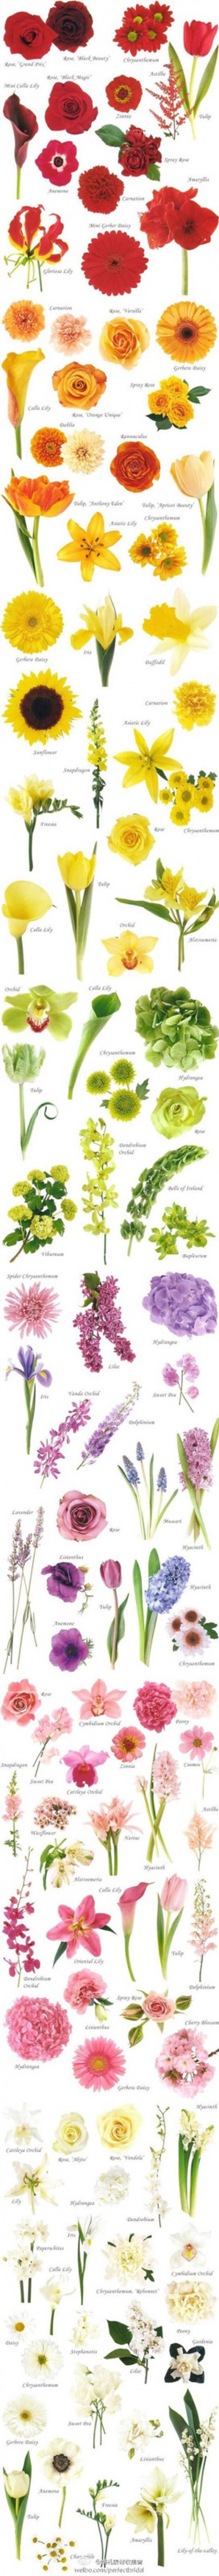 Цветы на клумбу - сочетания садовых цветов